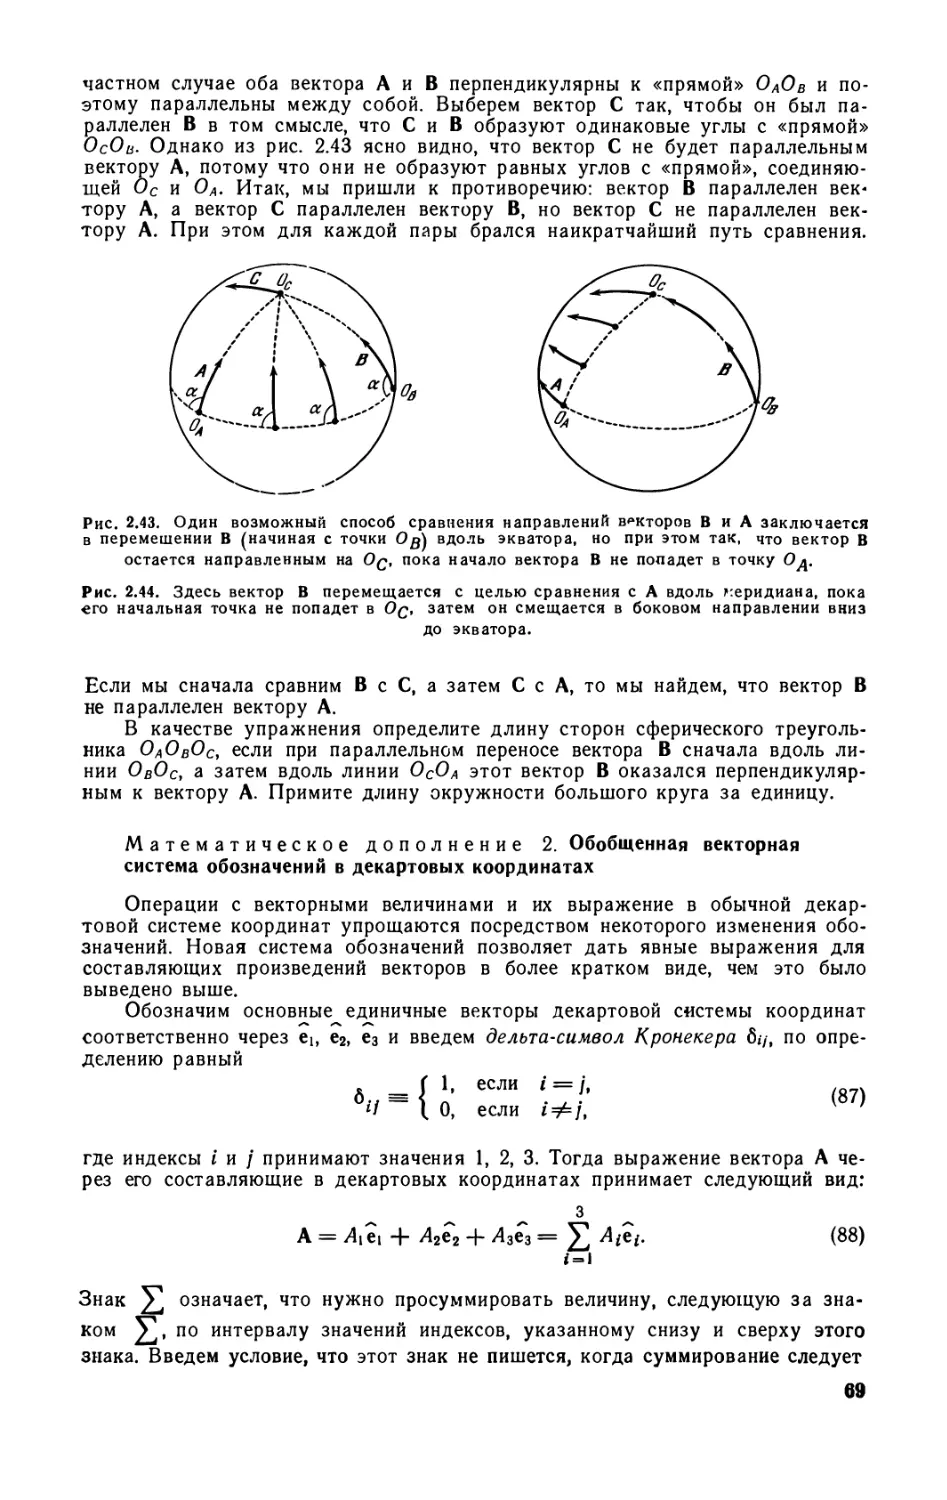 Математическое дополнение 1. Равенство векторов в сферическом пространстве 68 Математическое дополнение 2. Обобщенная векторная система обозначений в декартовых координатах